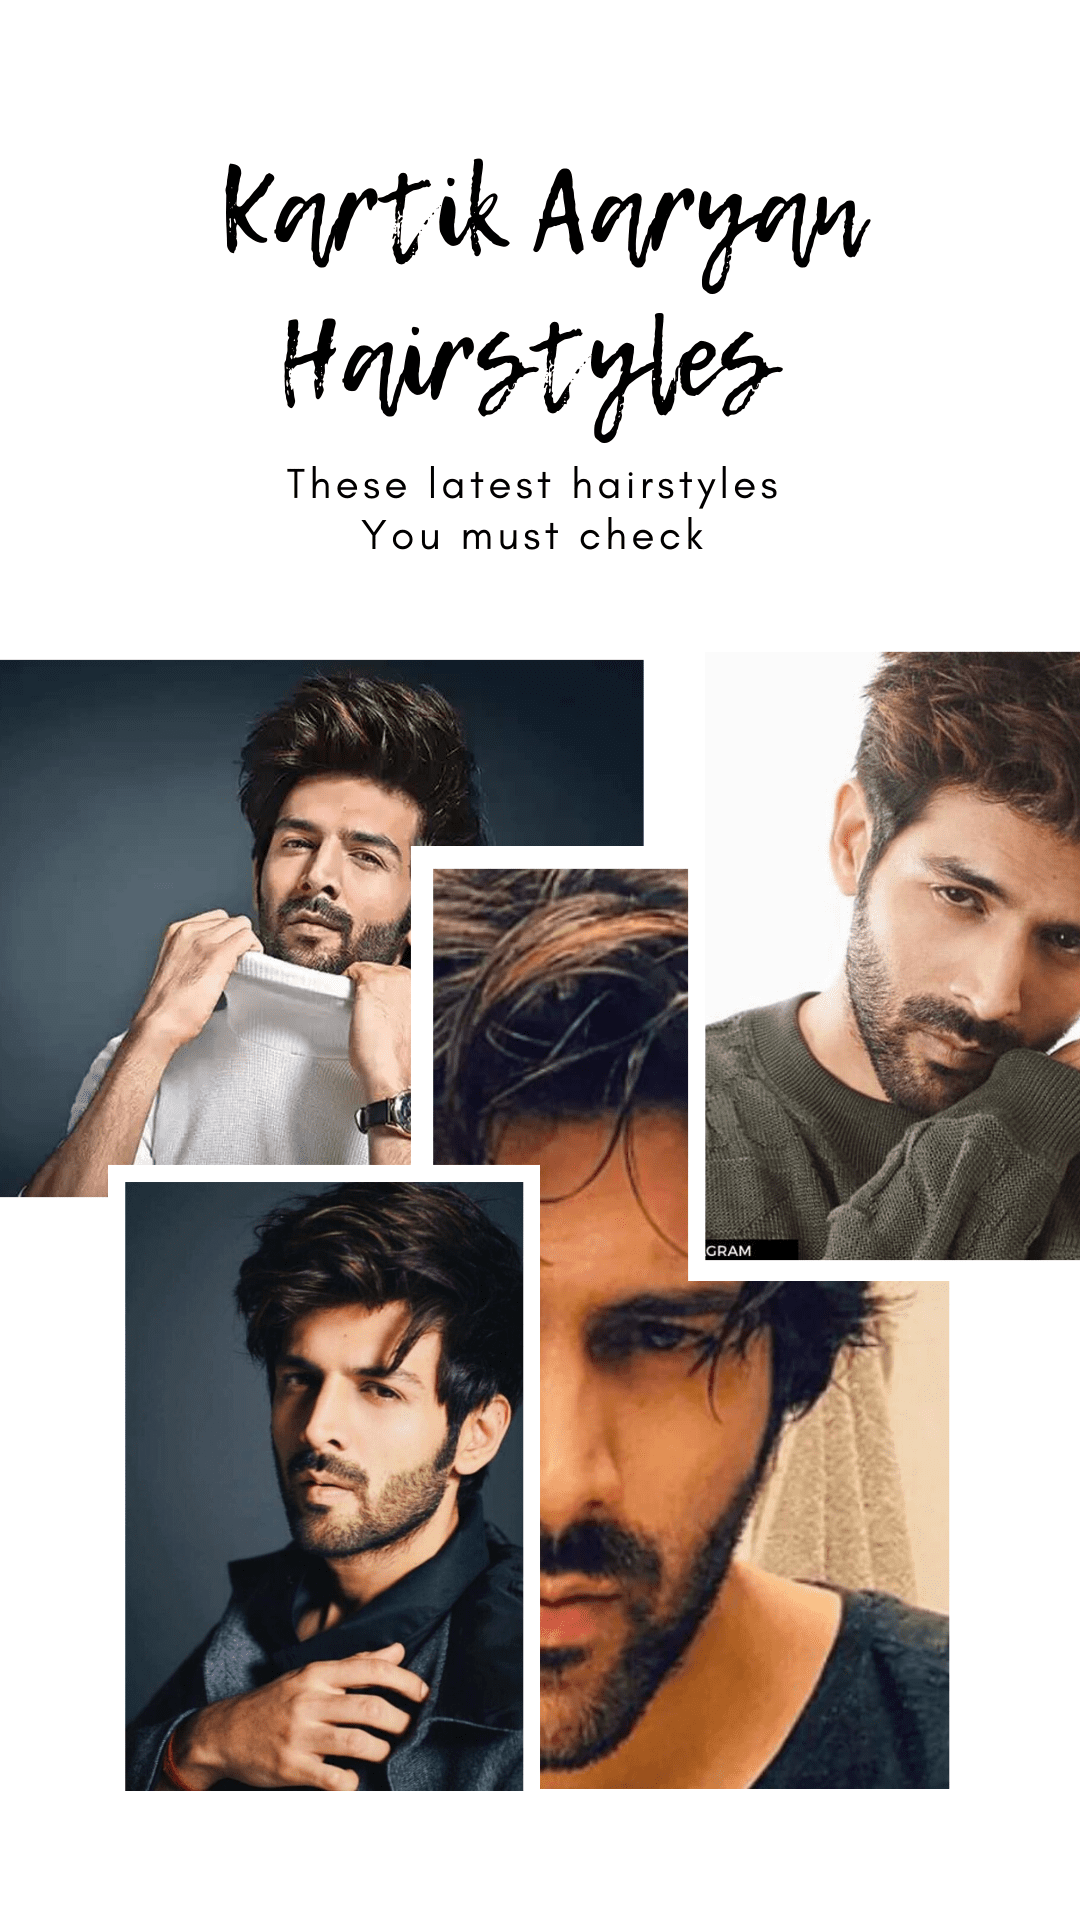 kartik aaryan hairstyles collagekartik aaryan hairstyles collage